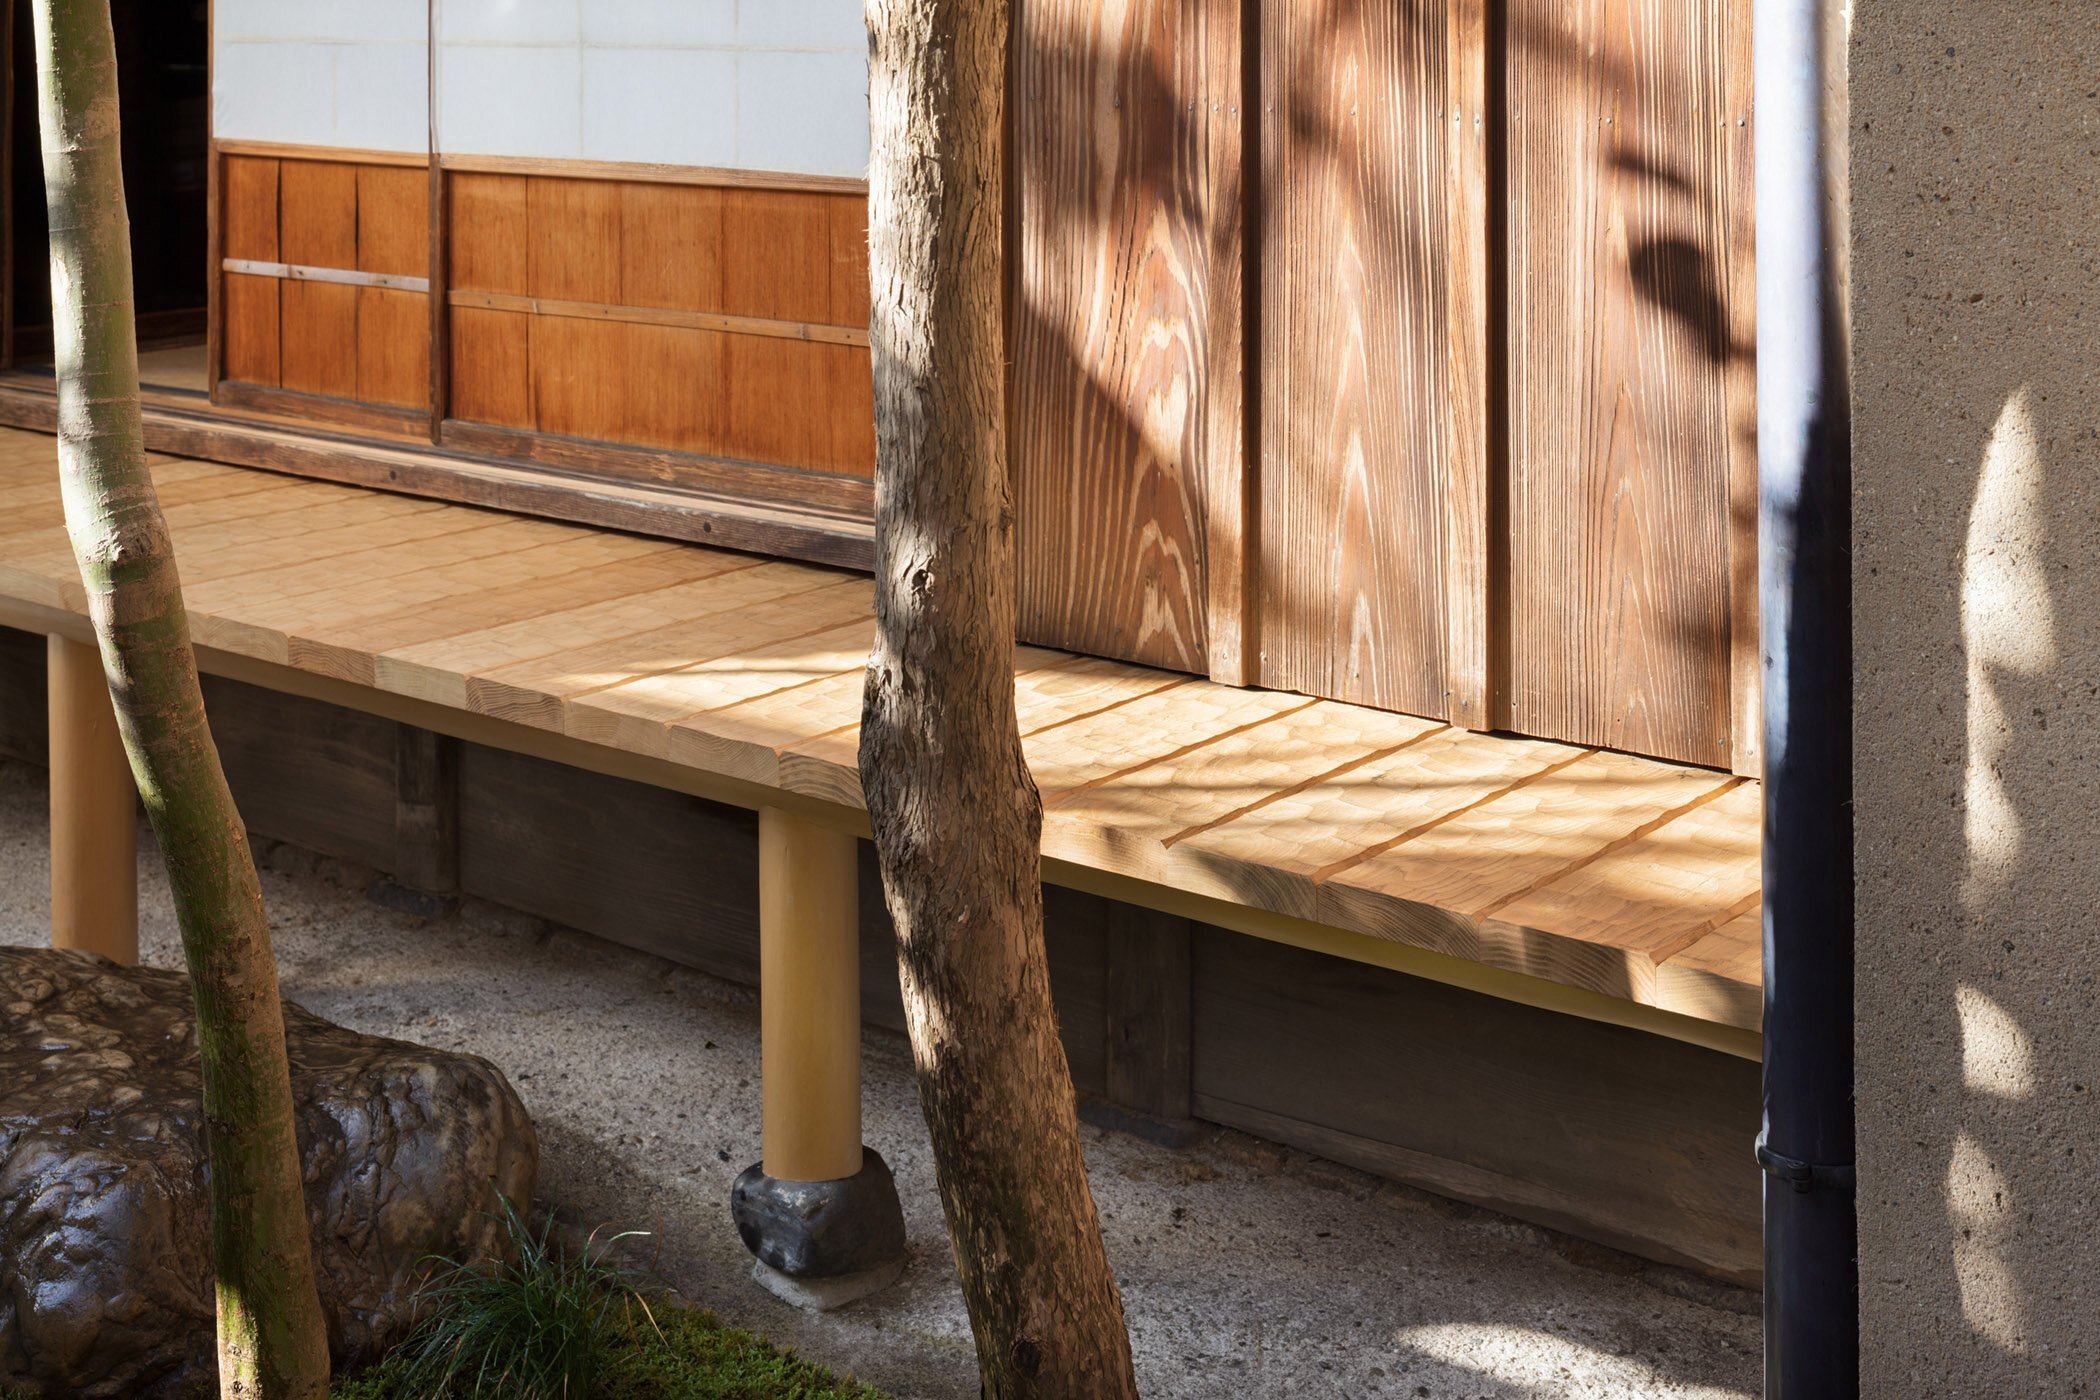  柳原照弘 Teruhiro Yanagihara Studioがインテリアデザインを手掛けた京都の尾張屋本店 菓子処。新たに整えた縁側 